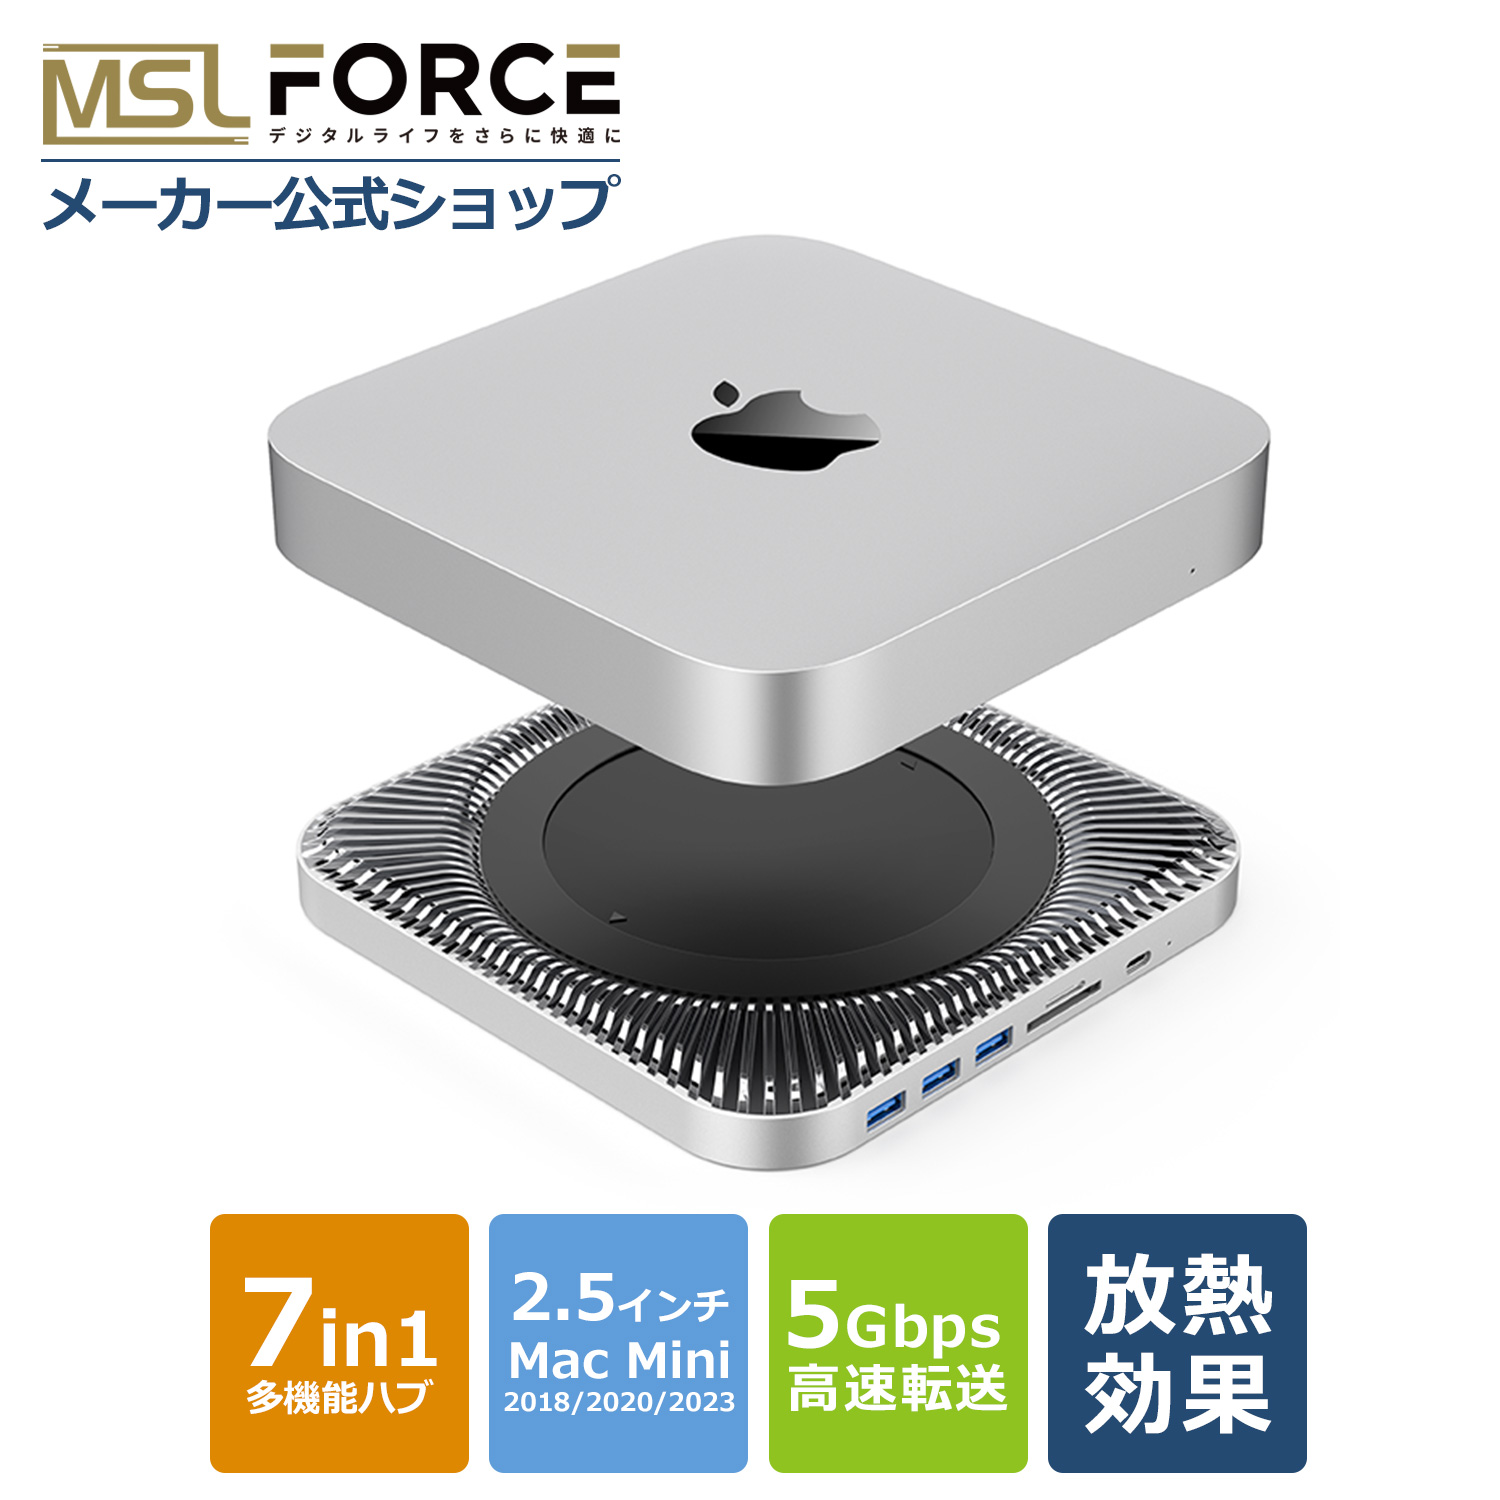 本日最大600円引き Mac Mini用ハブ 7in1 放熱設計 Mac mini用スタンド USB3.0 micro SD Mac Mini 2018/2020/2023 SATA接続 HDD/SSD a5701 送料無料